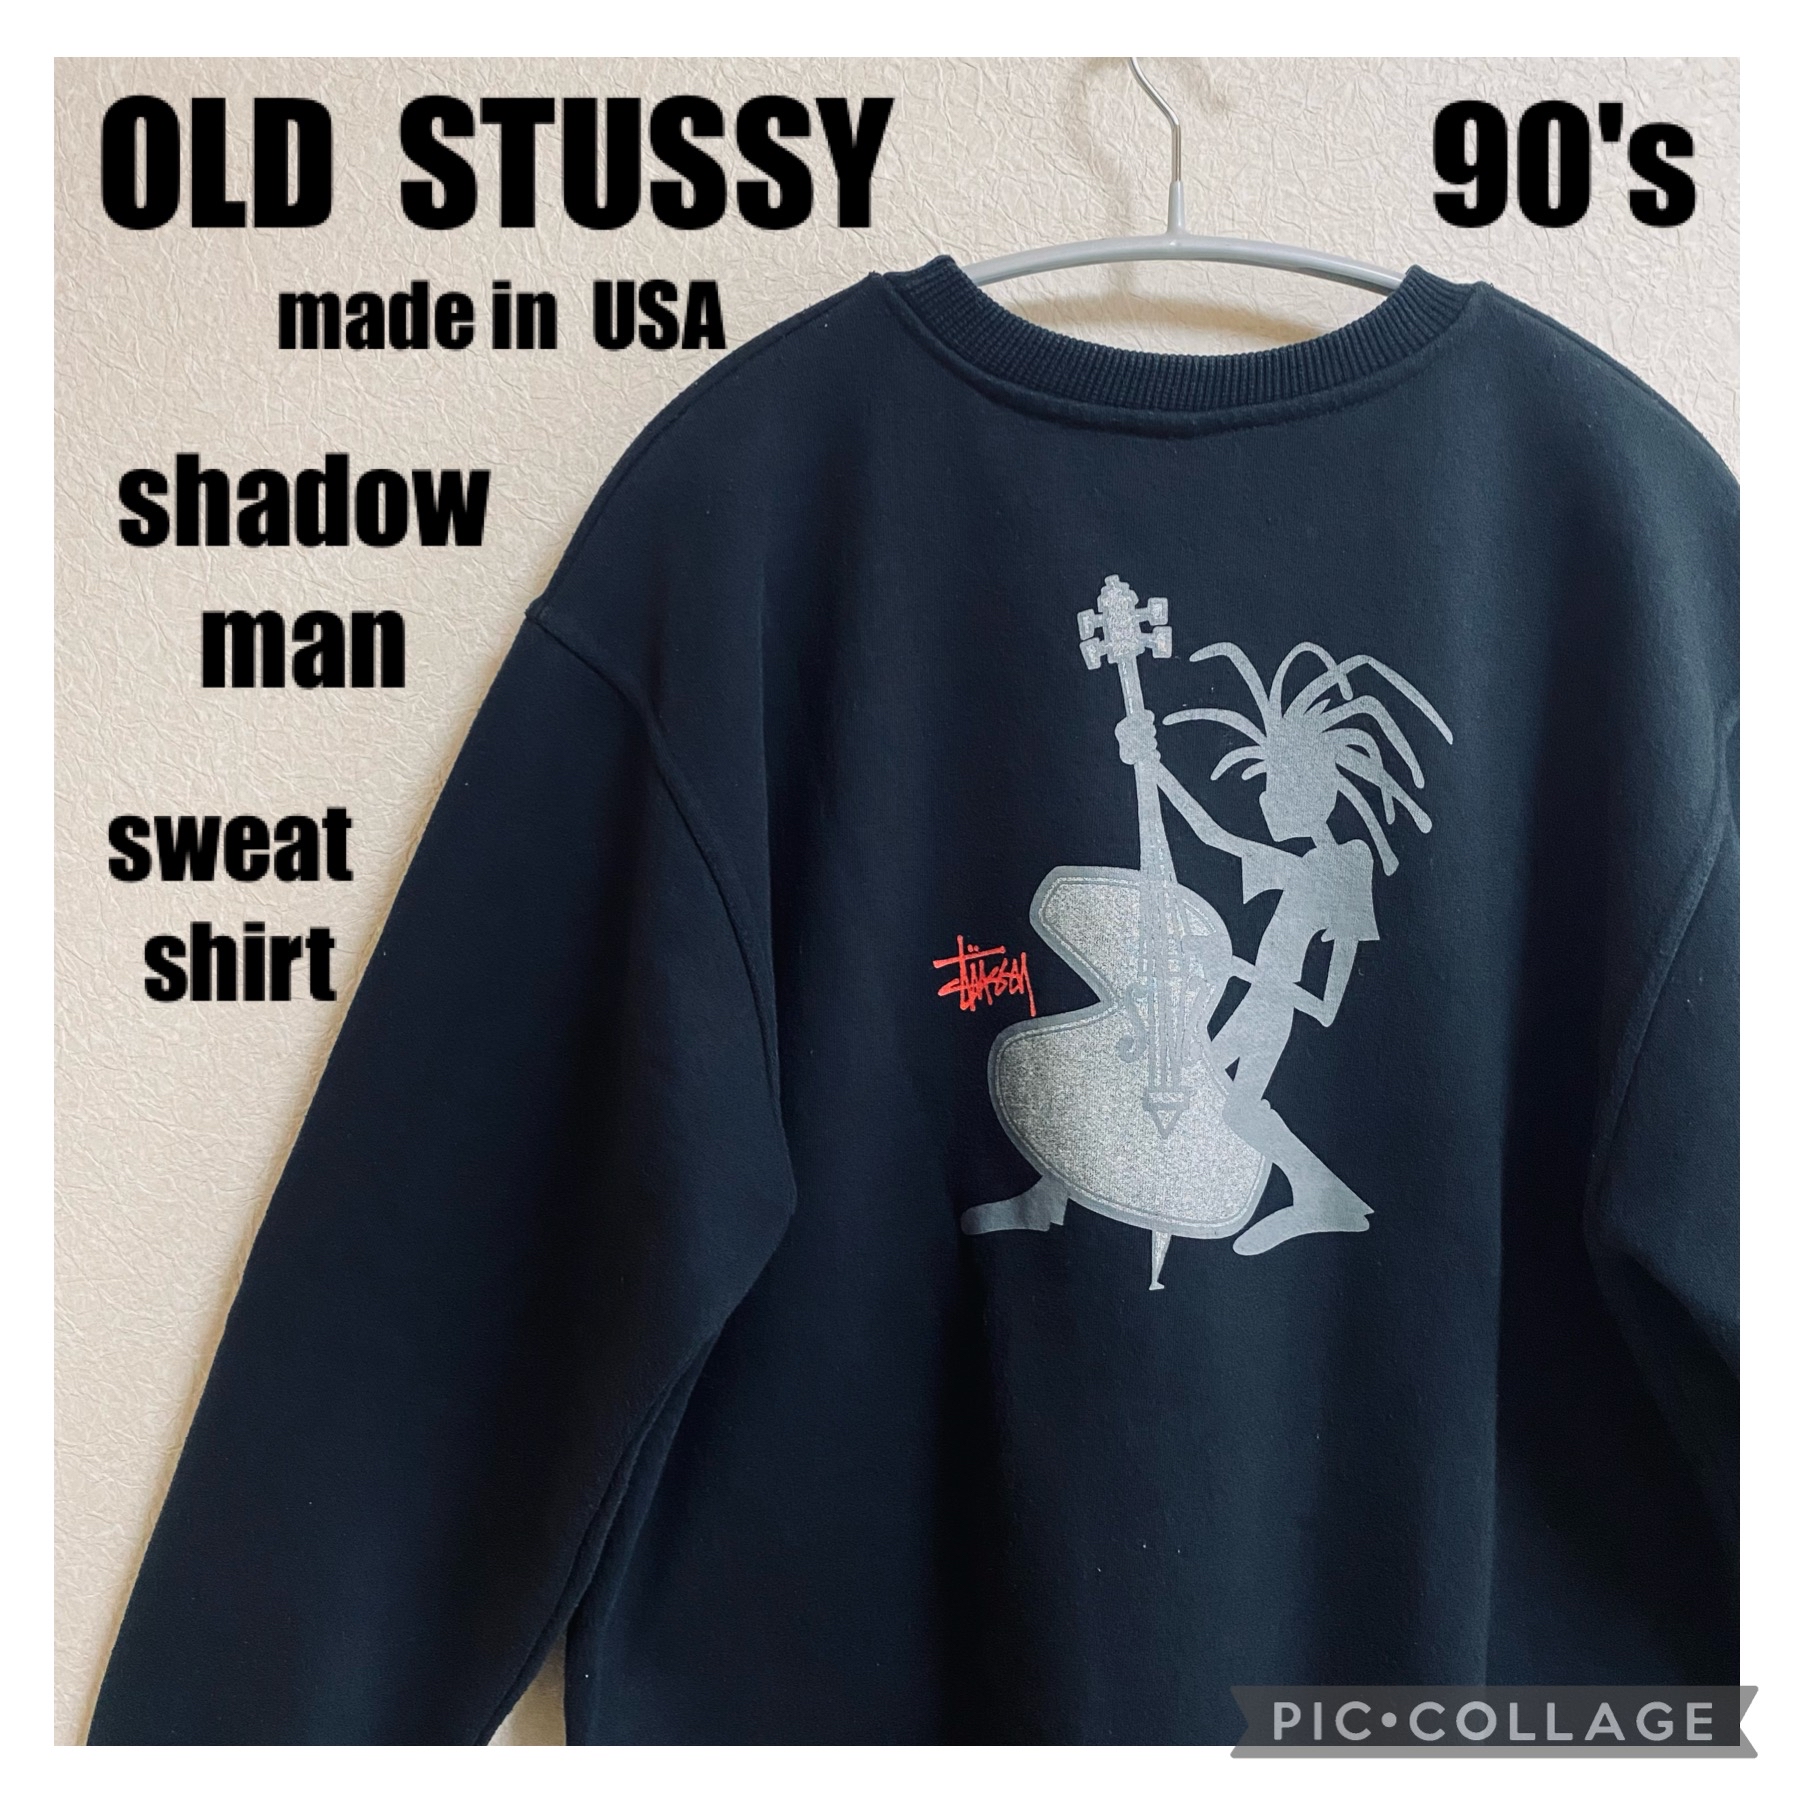 Stussy 90s 紺タグ jazz man sweat made in US www.krzysztofbialy.com